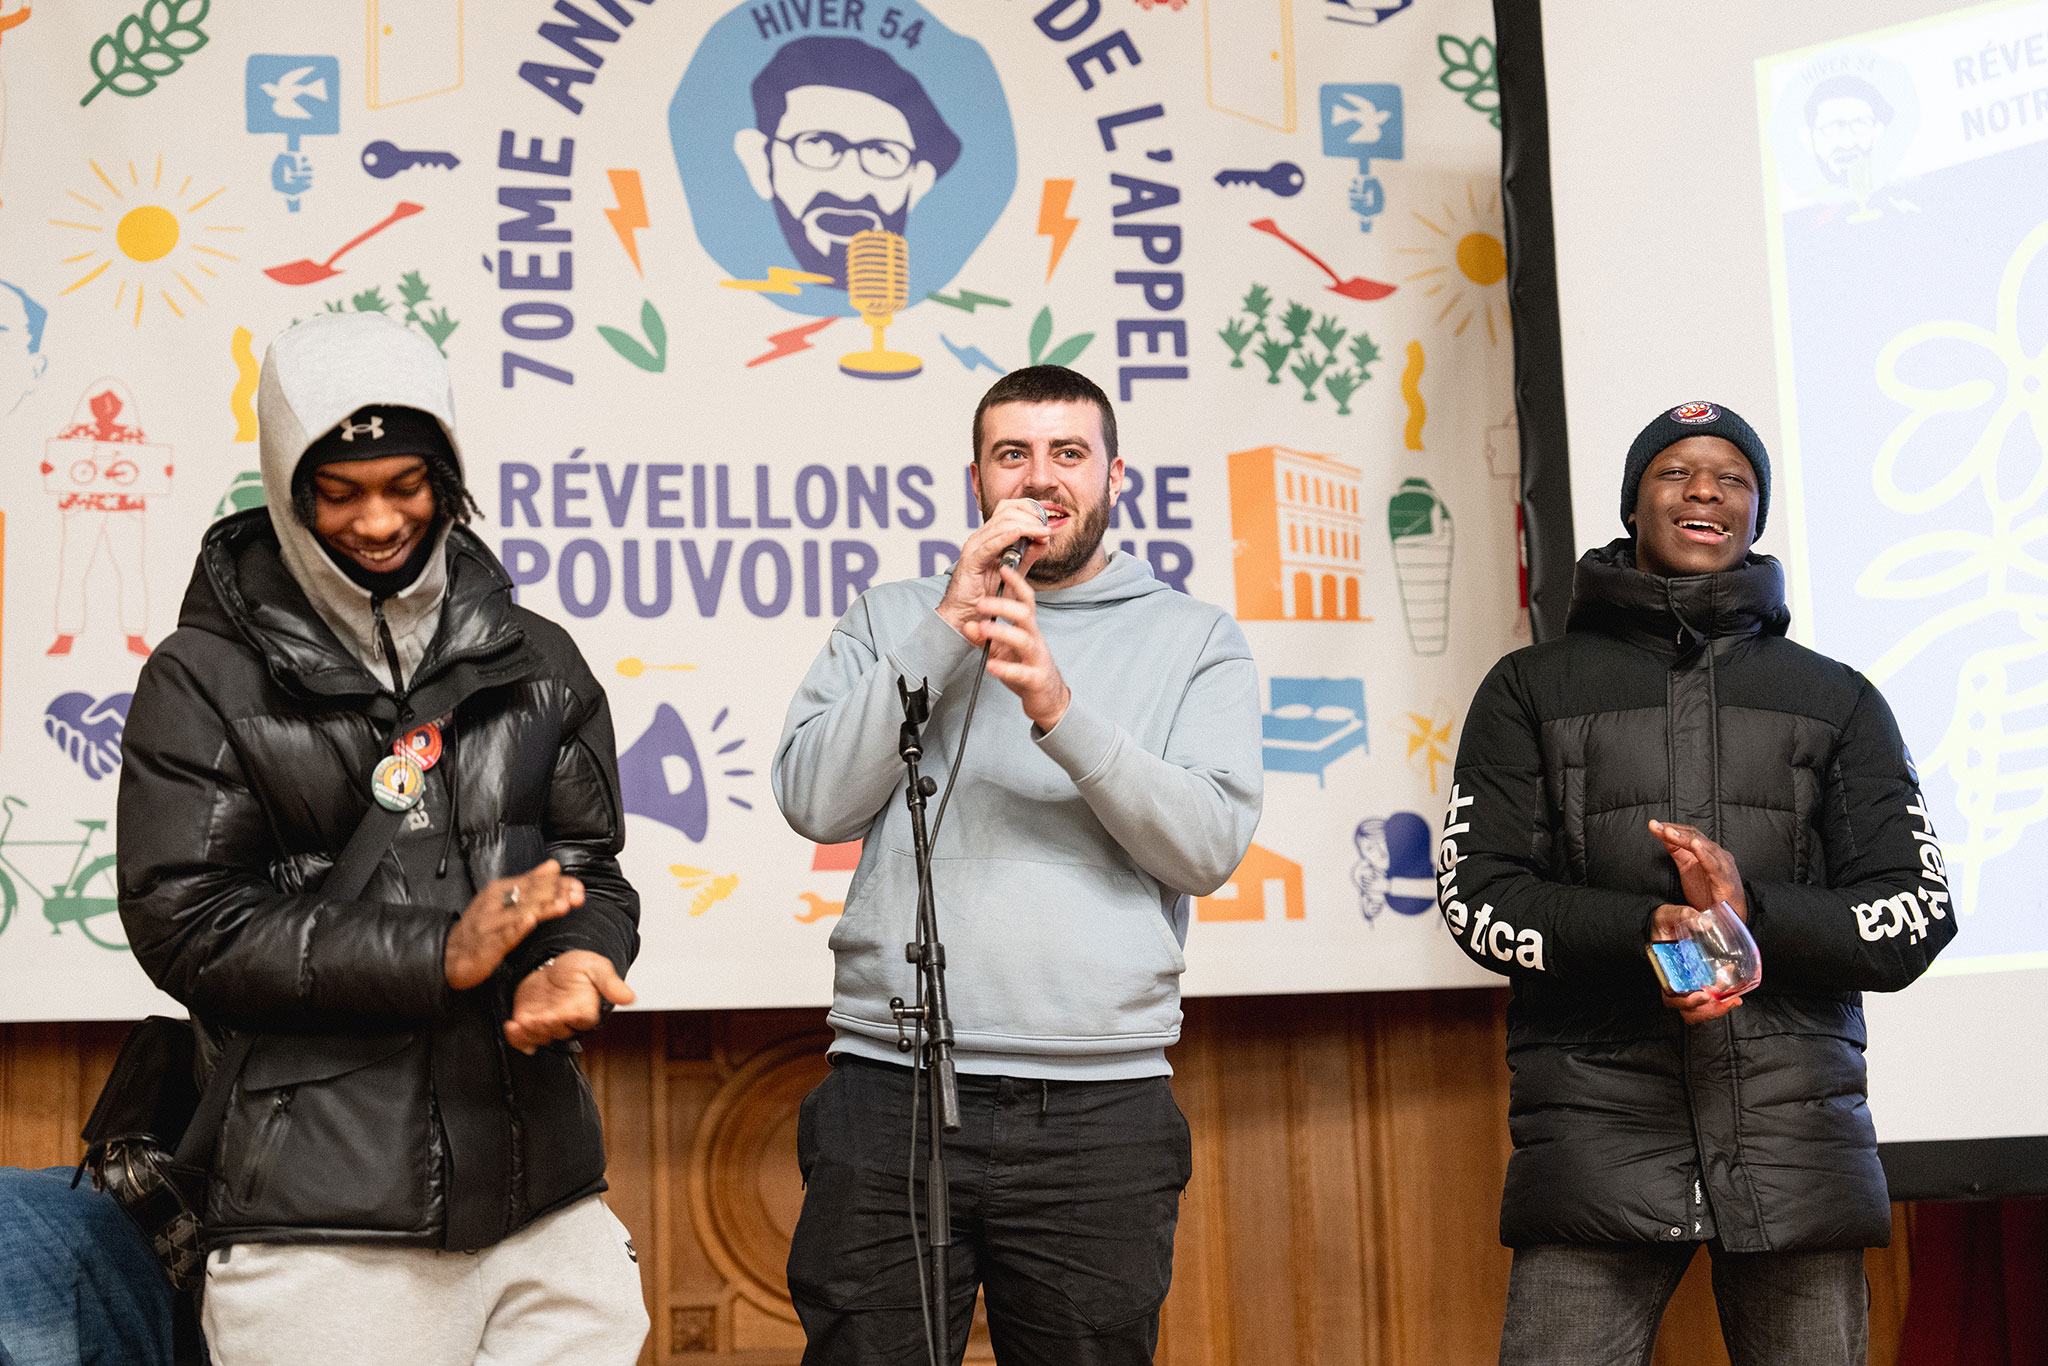 Les 70 ans de l'appel à Paris : soirée à l'académie du Climat